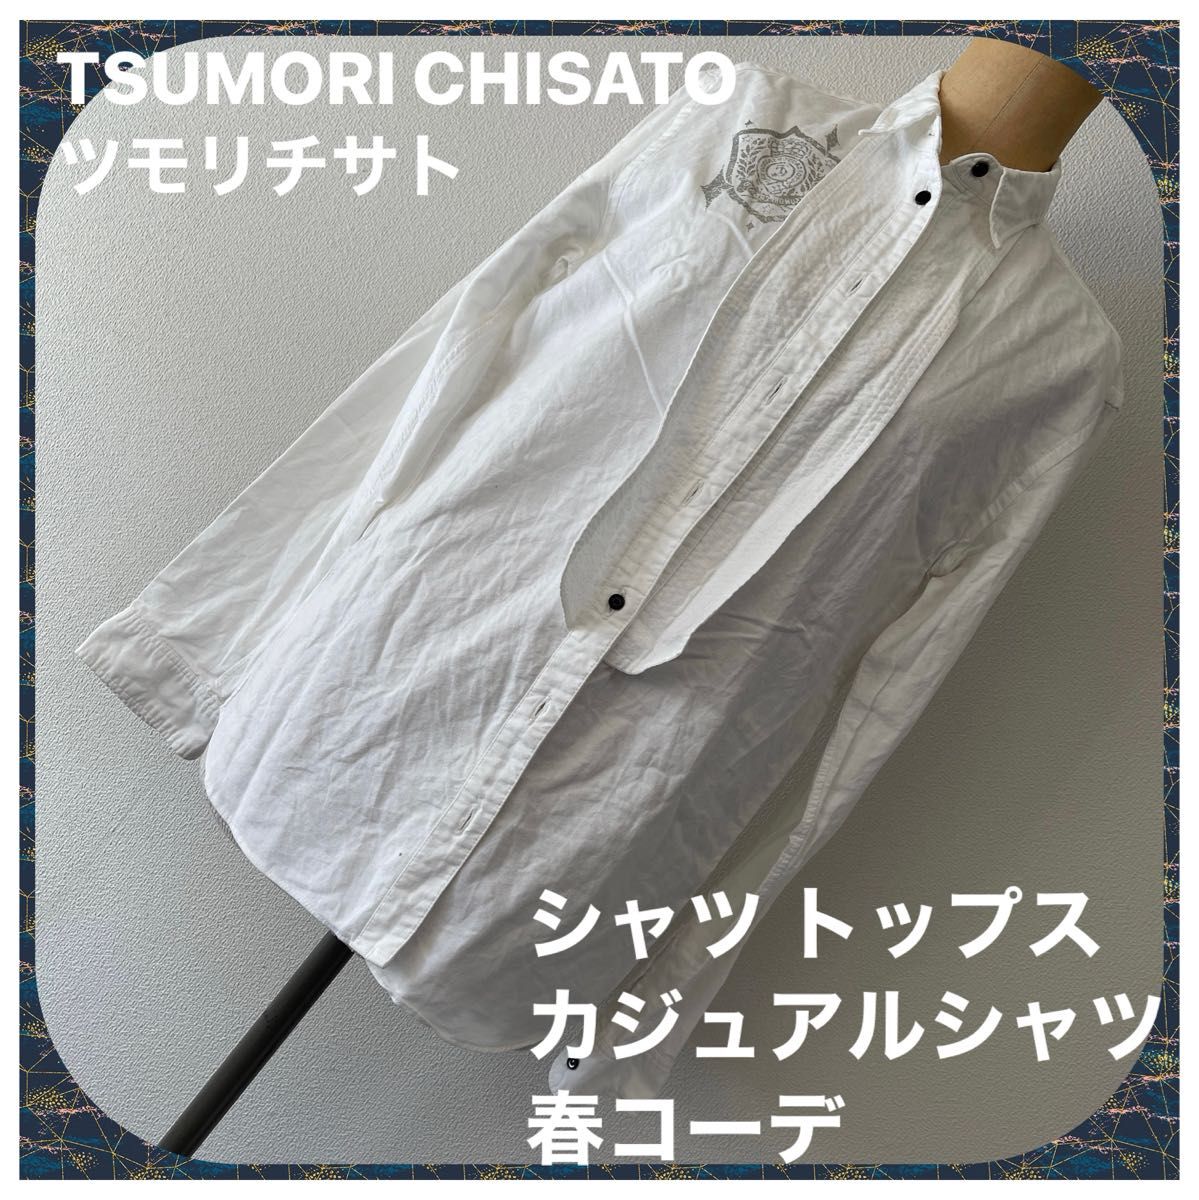 ツモリチサト 長袖 ホワイトデザインシャツ TSUMORI CHISATO ブラウス シャツ 白 長袖 ホワイト